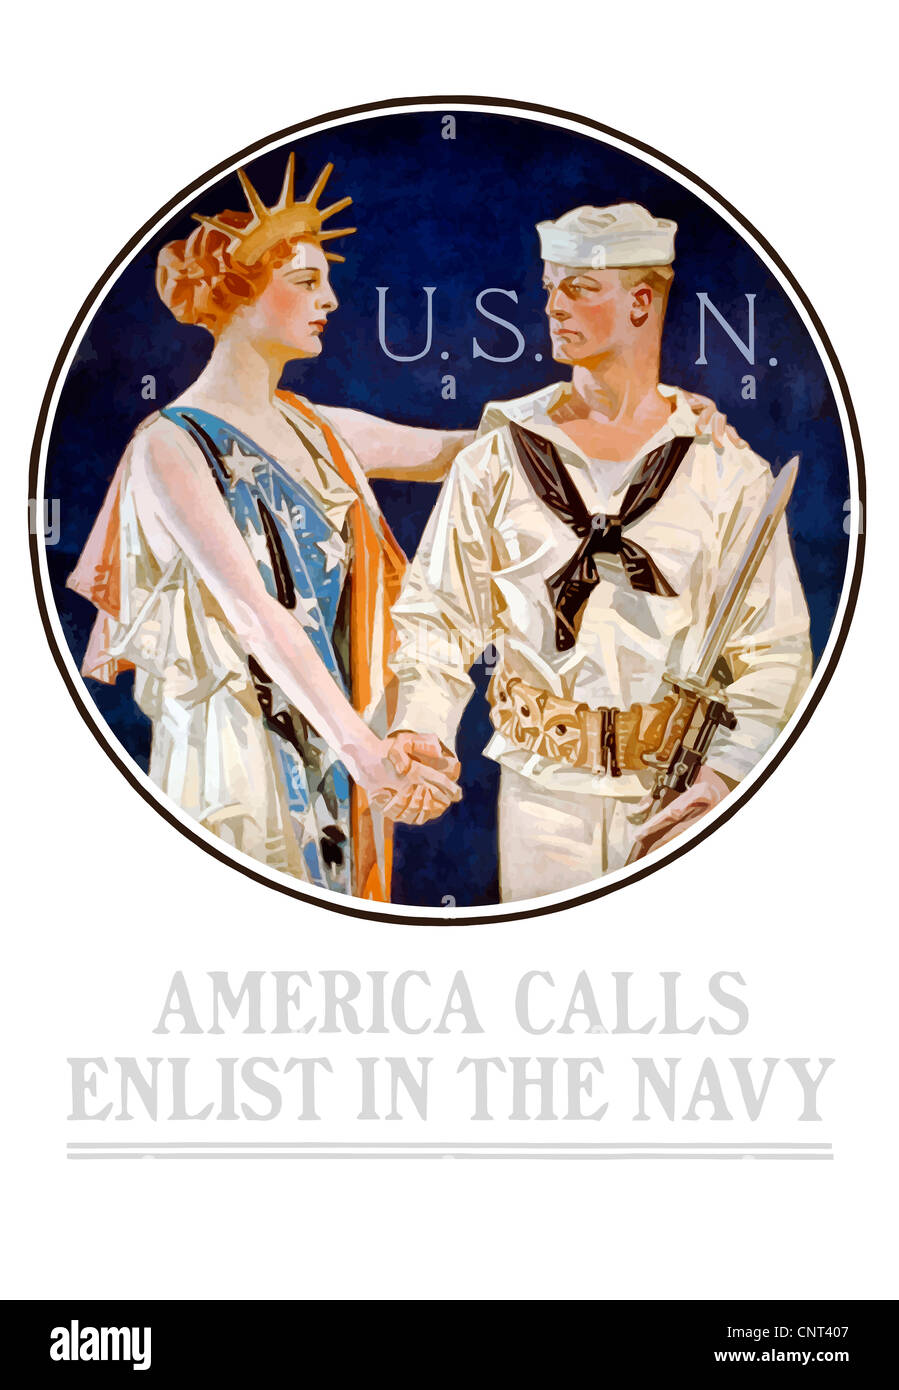 Vintage poster la Seconde Guerre mondiale, de liberté en serrant la main d'un marin. Il lit, U.S.N. - Appels de l'Amérique s'enrôler dans la Marine. Banque D'Images